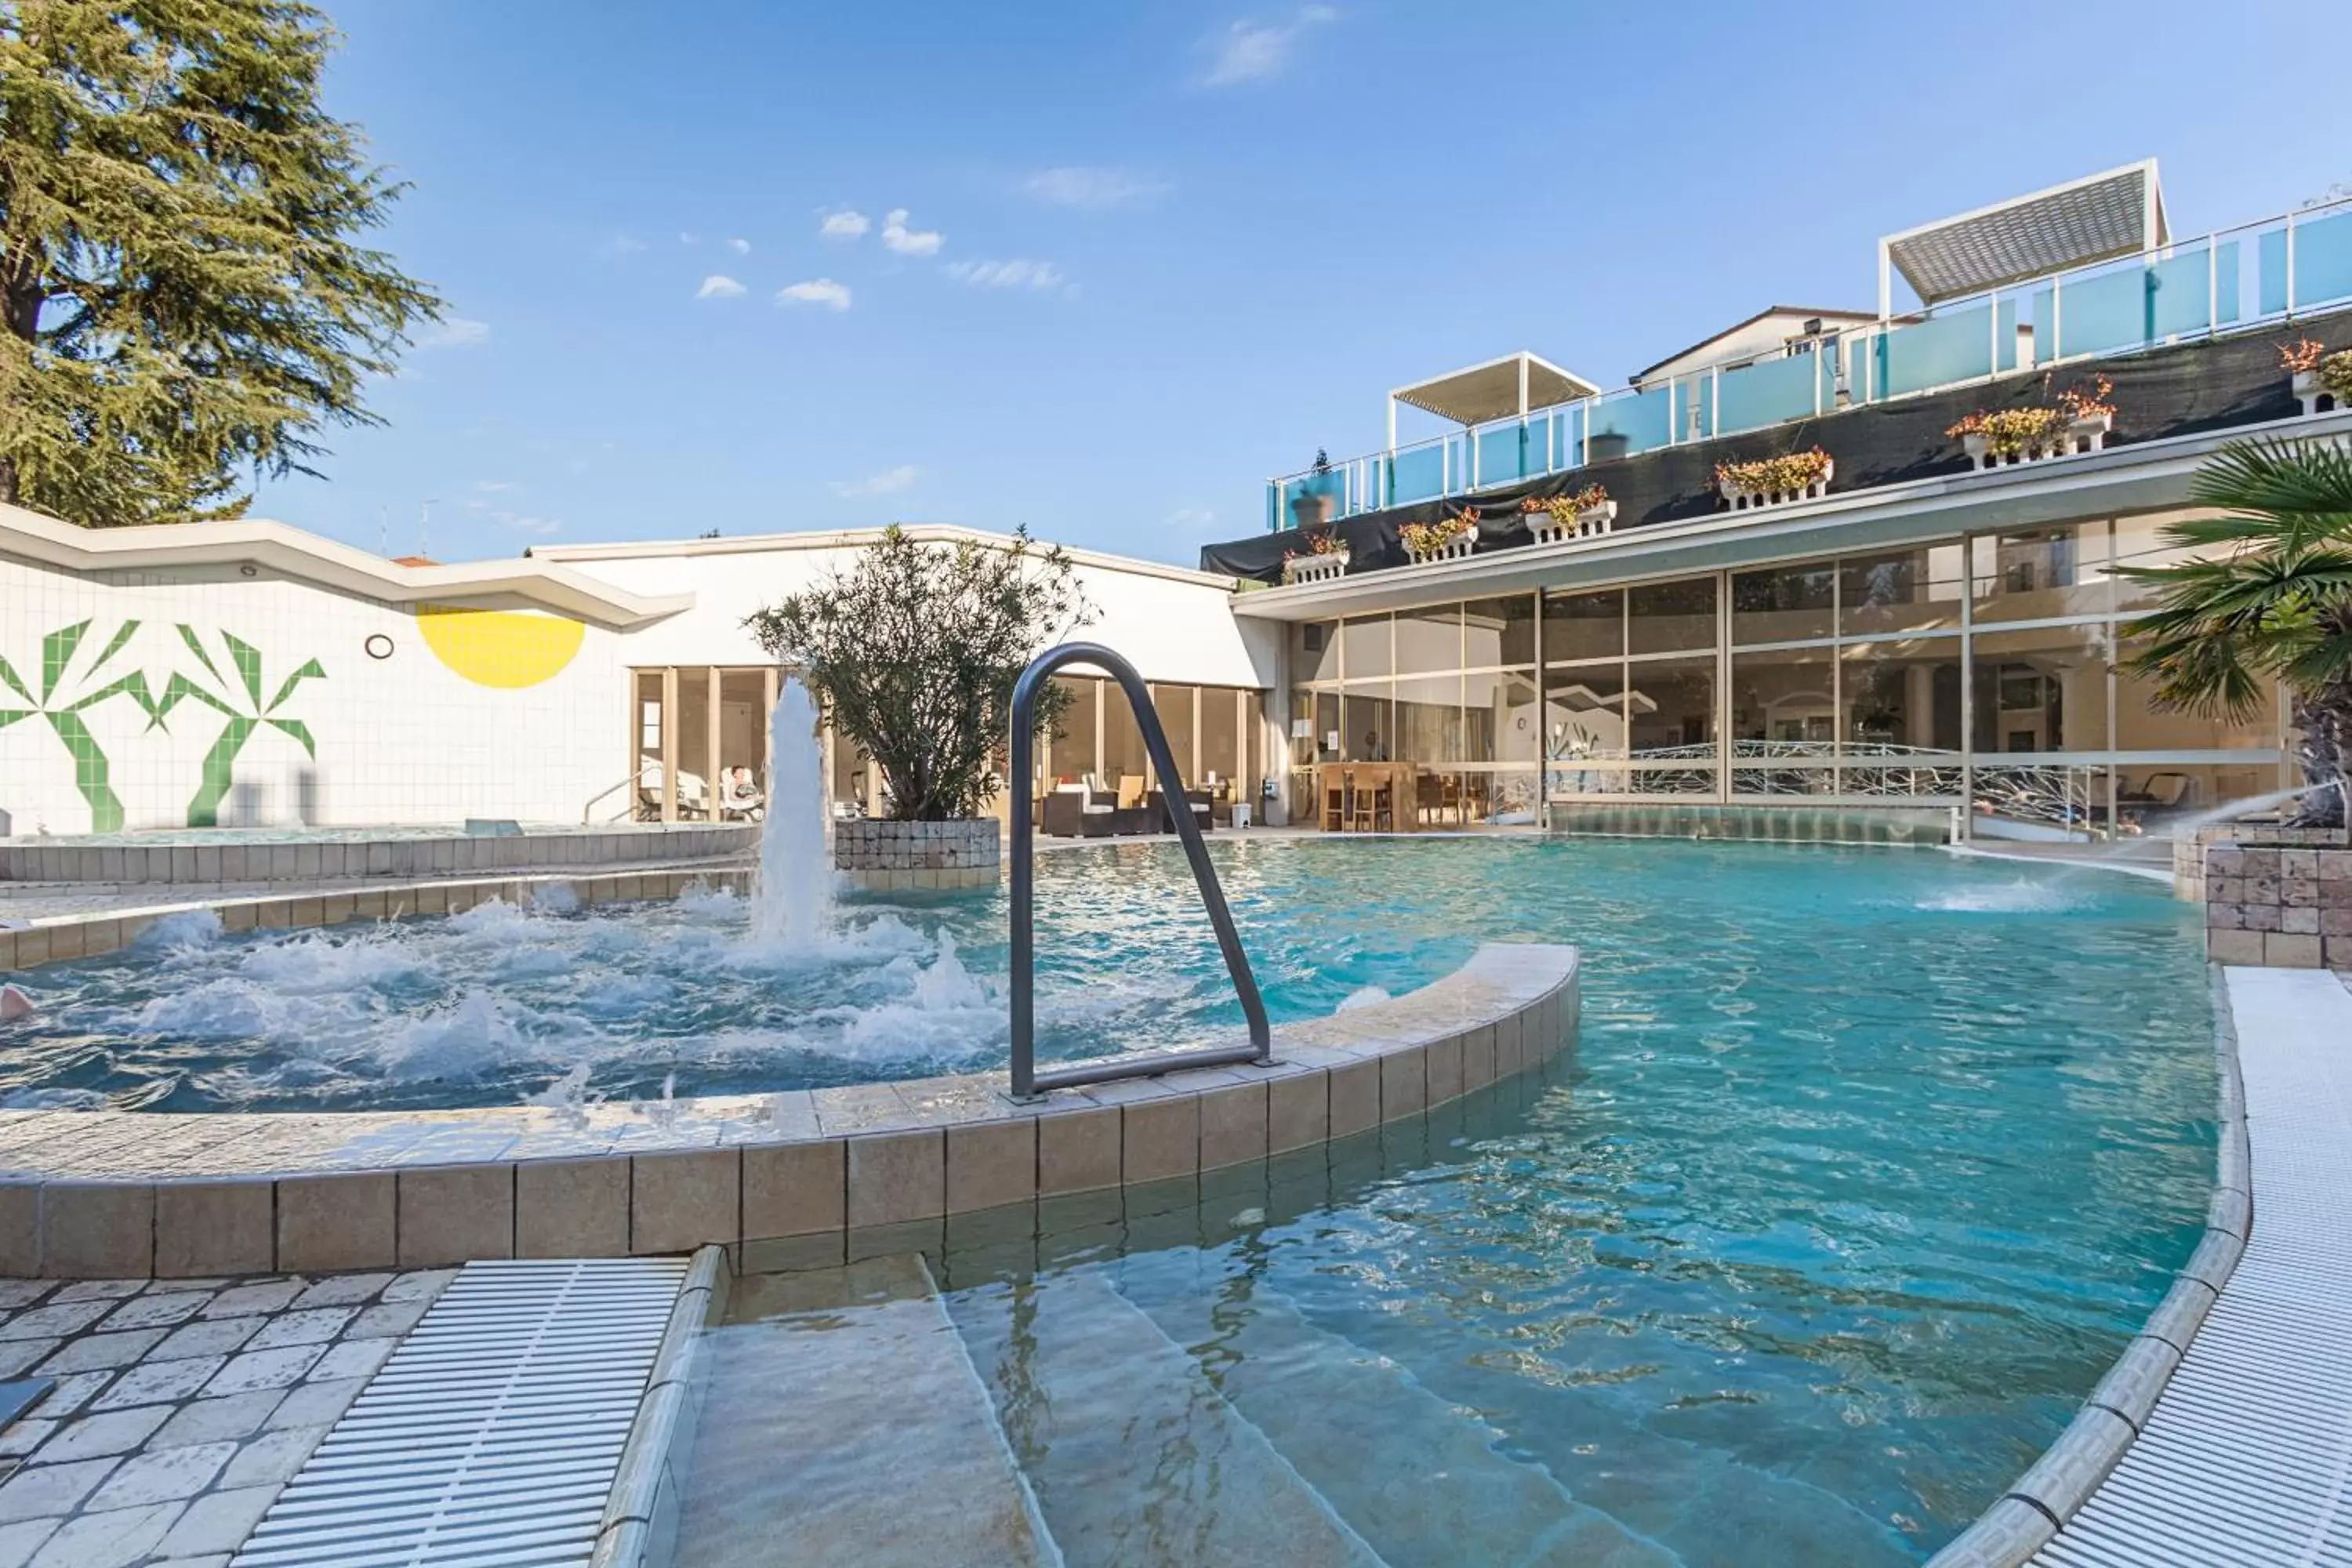 Swimming Pool in Hotel Terme Patria